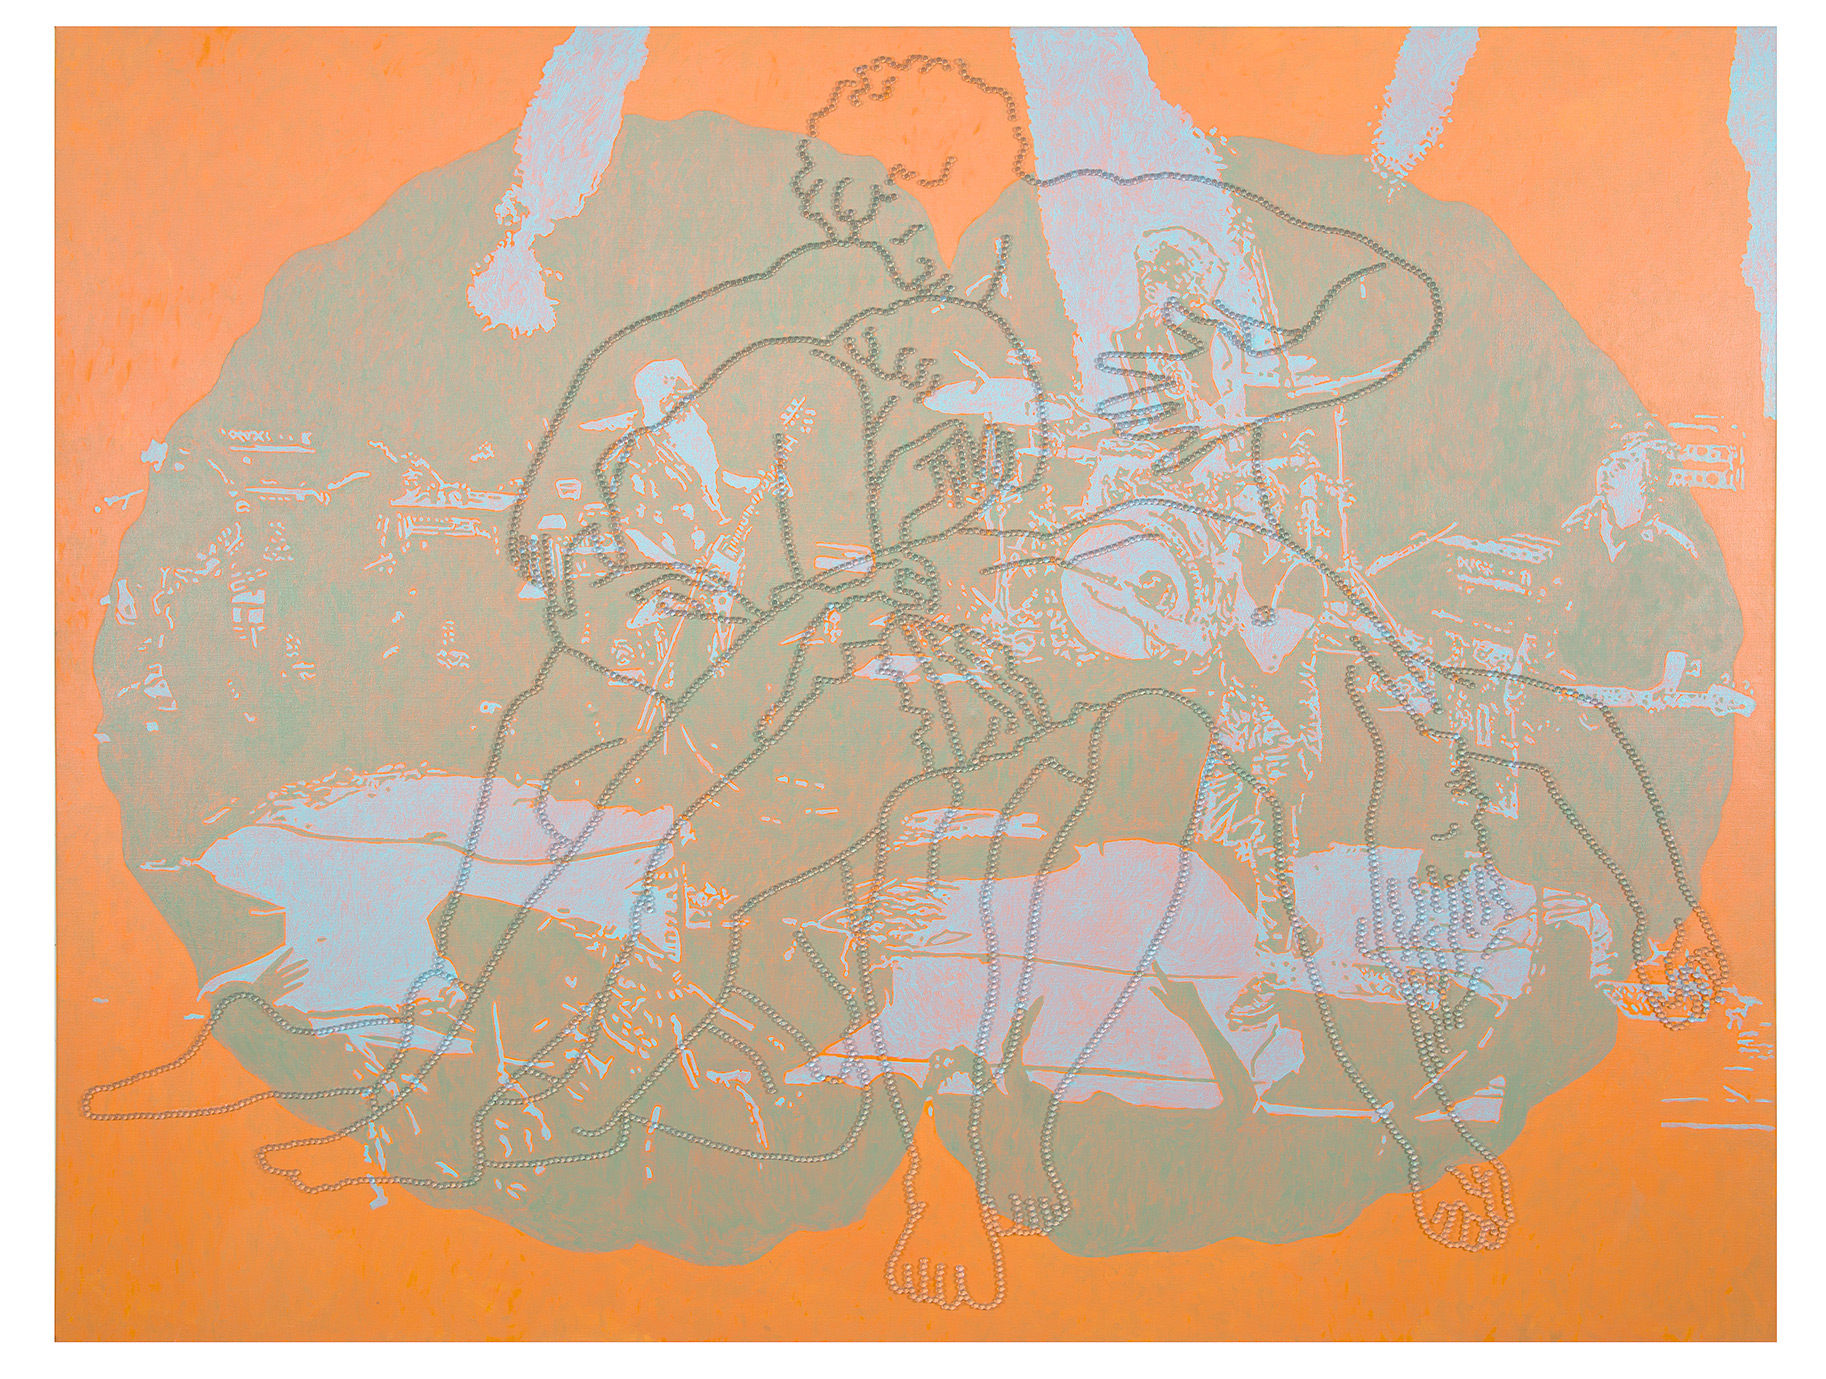 Apocalypse des Realen, 170 x 220 cm, Öl und Glaskugeln auf Leinwand, 2017